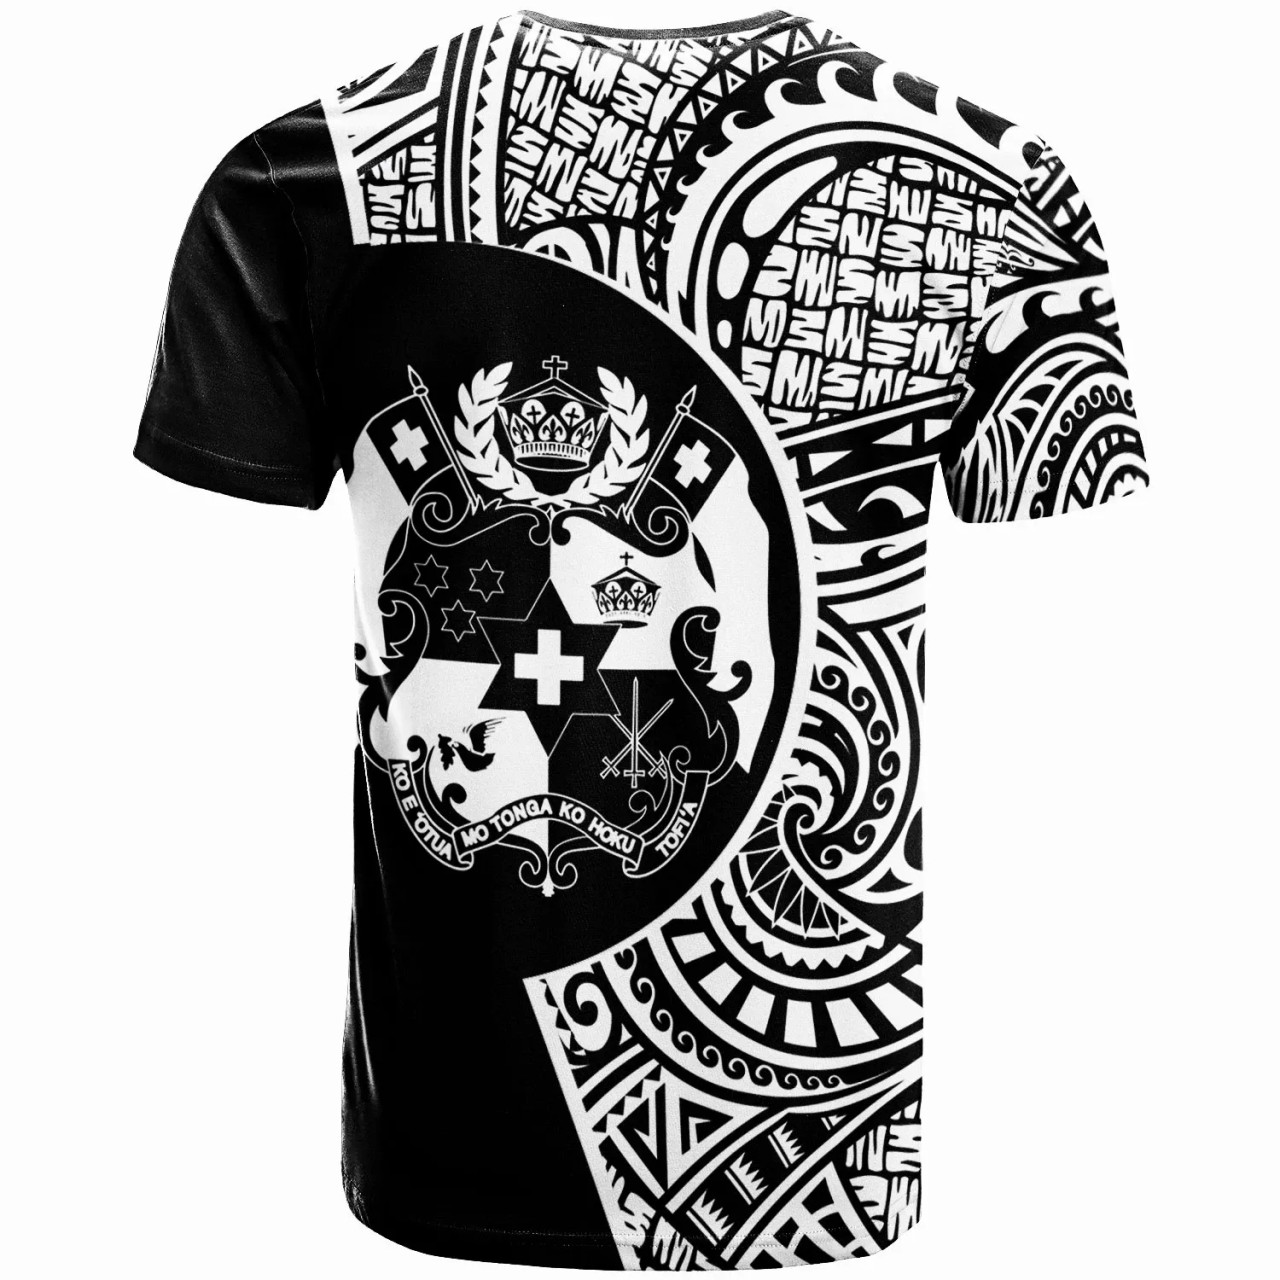 Tonga T-Shirt -Tonga Go Fishing Black Color 2